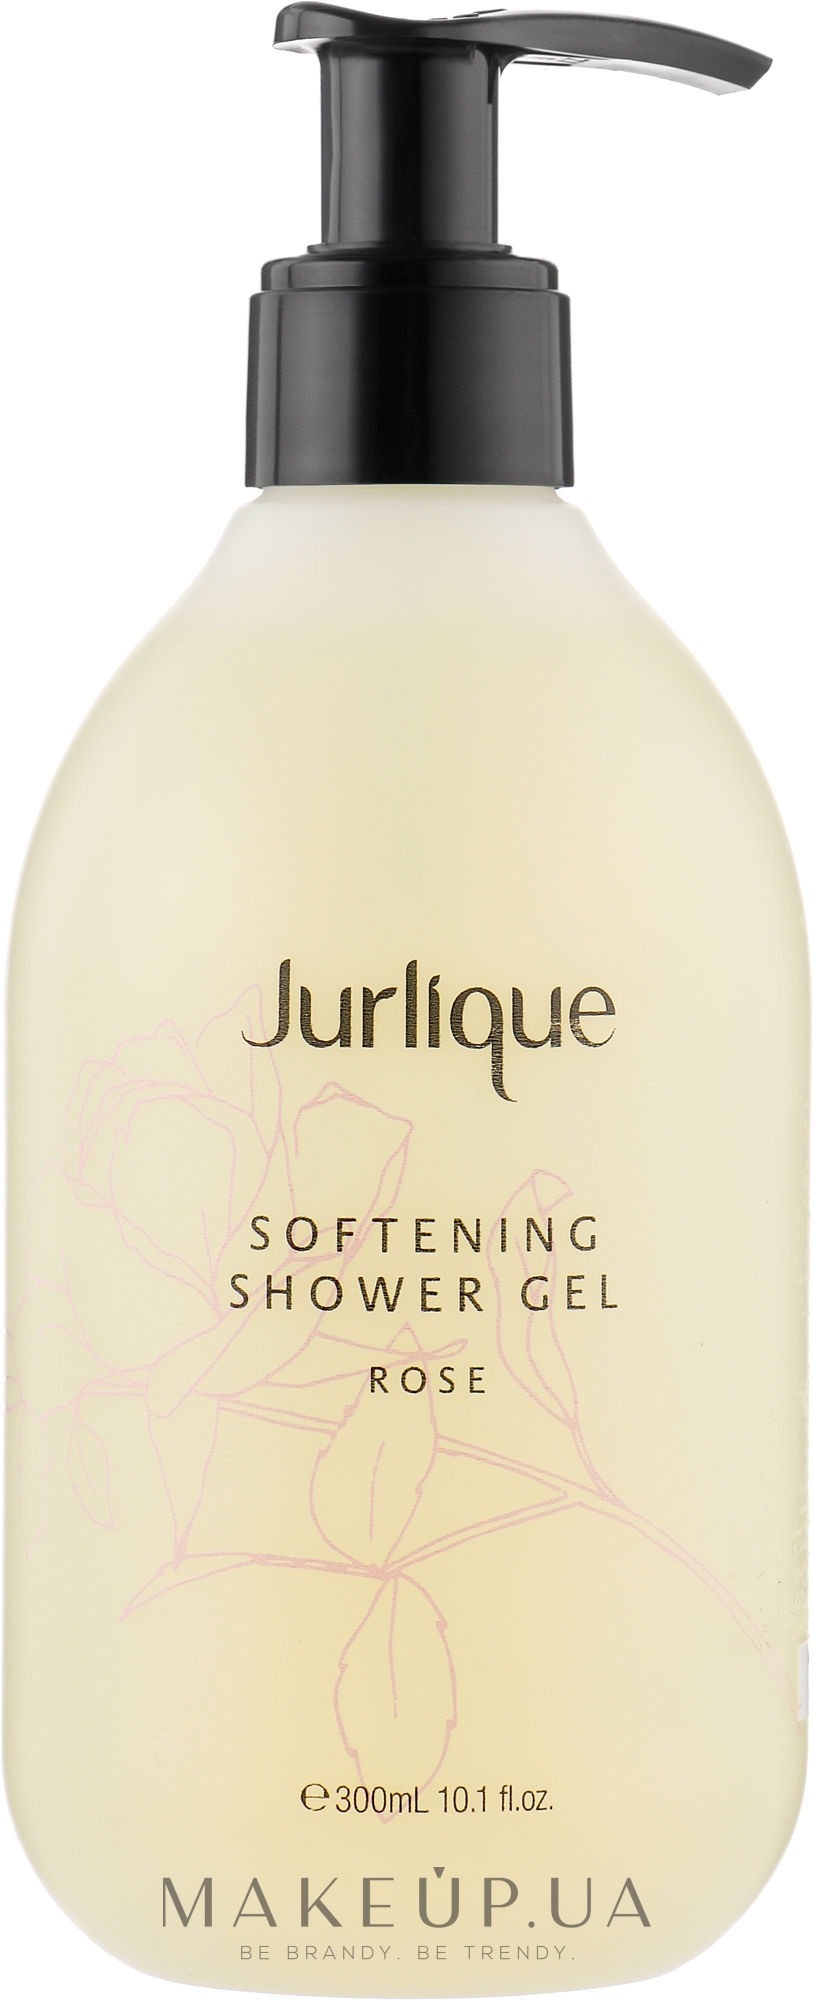 Смягчающий гель для душа с экстрактом розы - Jurlique Softening Shower Gel Rose — фото 300ml